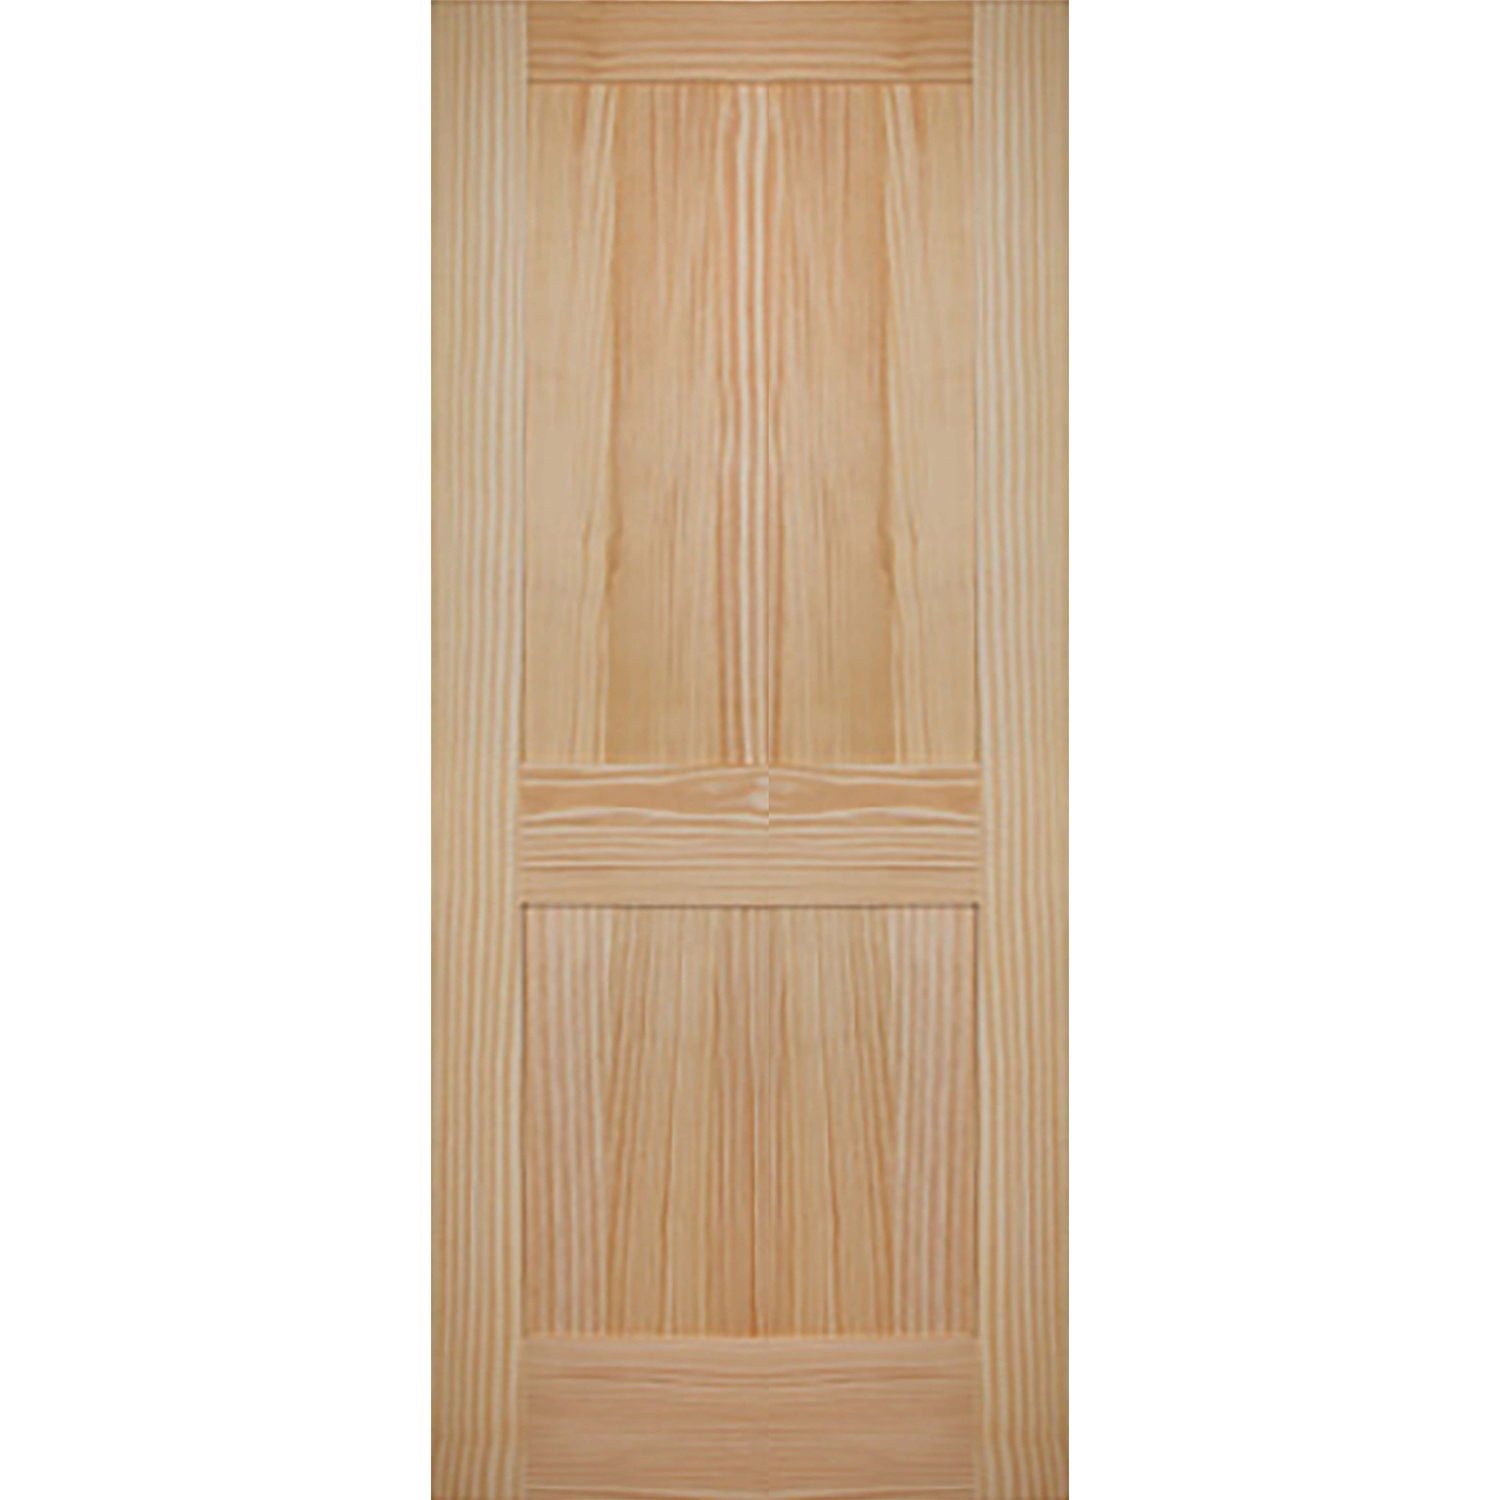 2 Panel 34 x 80 x 1 3/8 - Knotty Pine Door Shaker